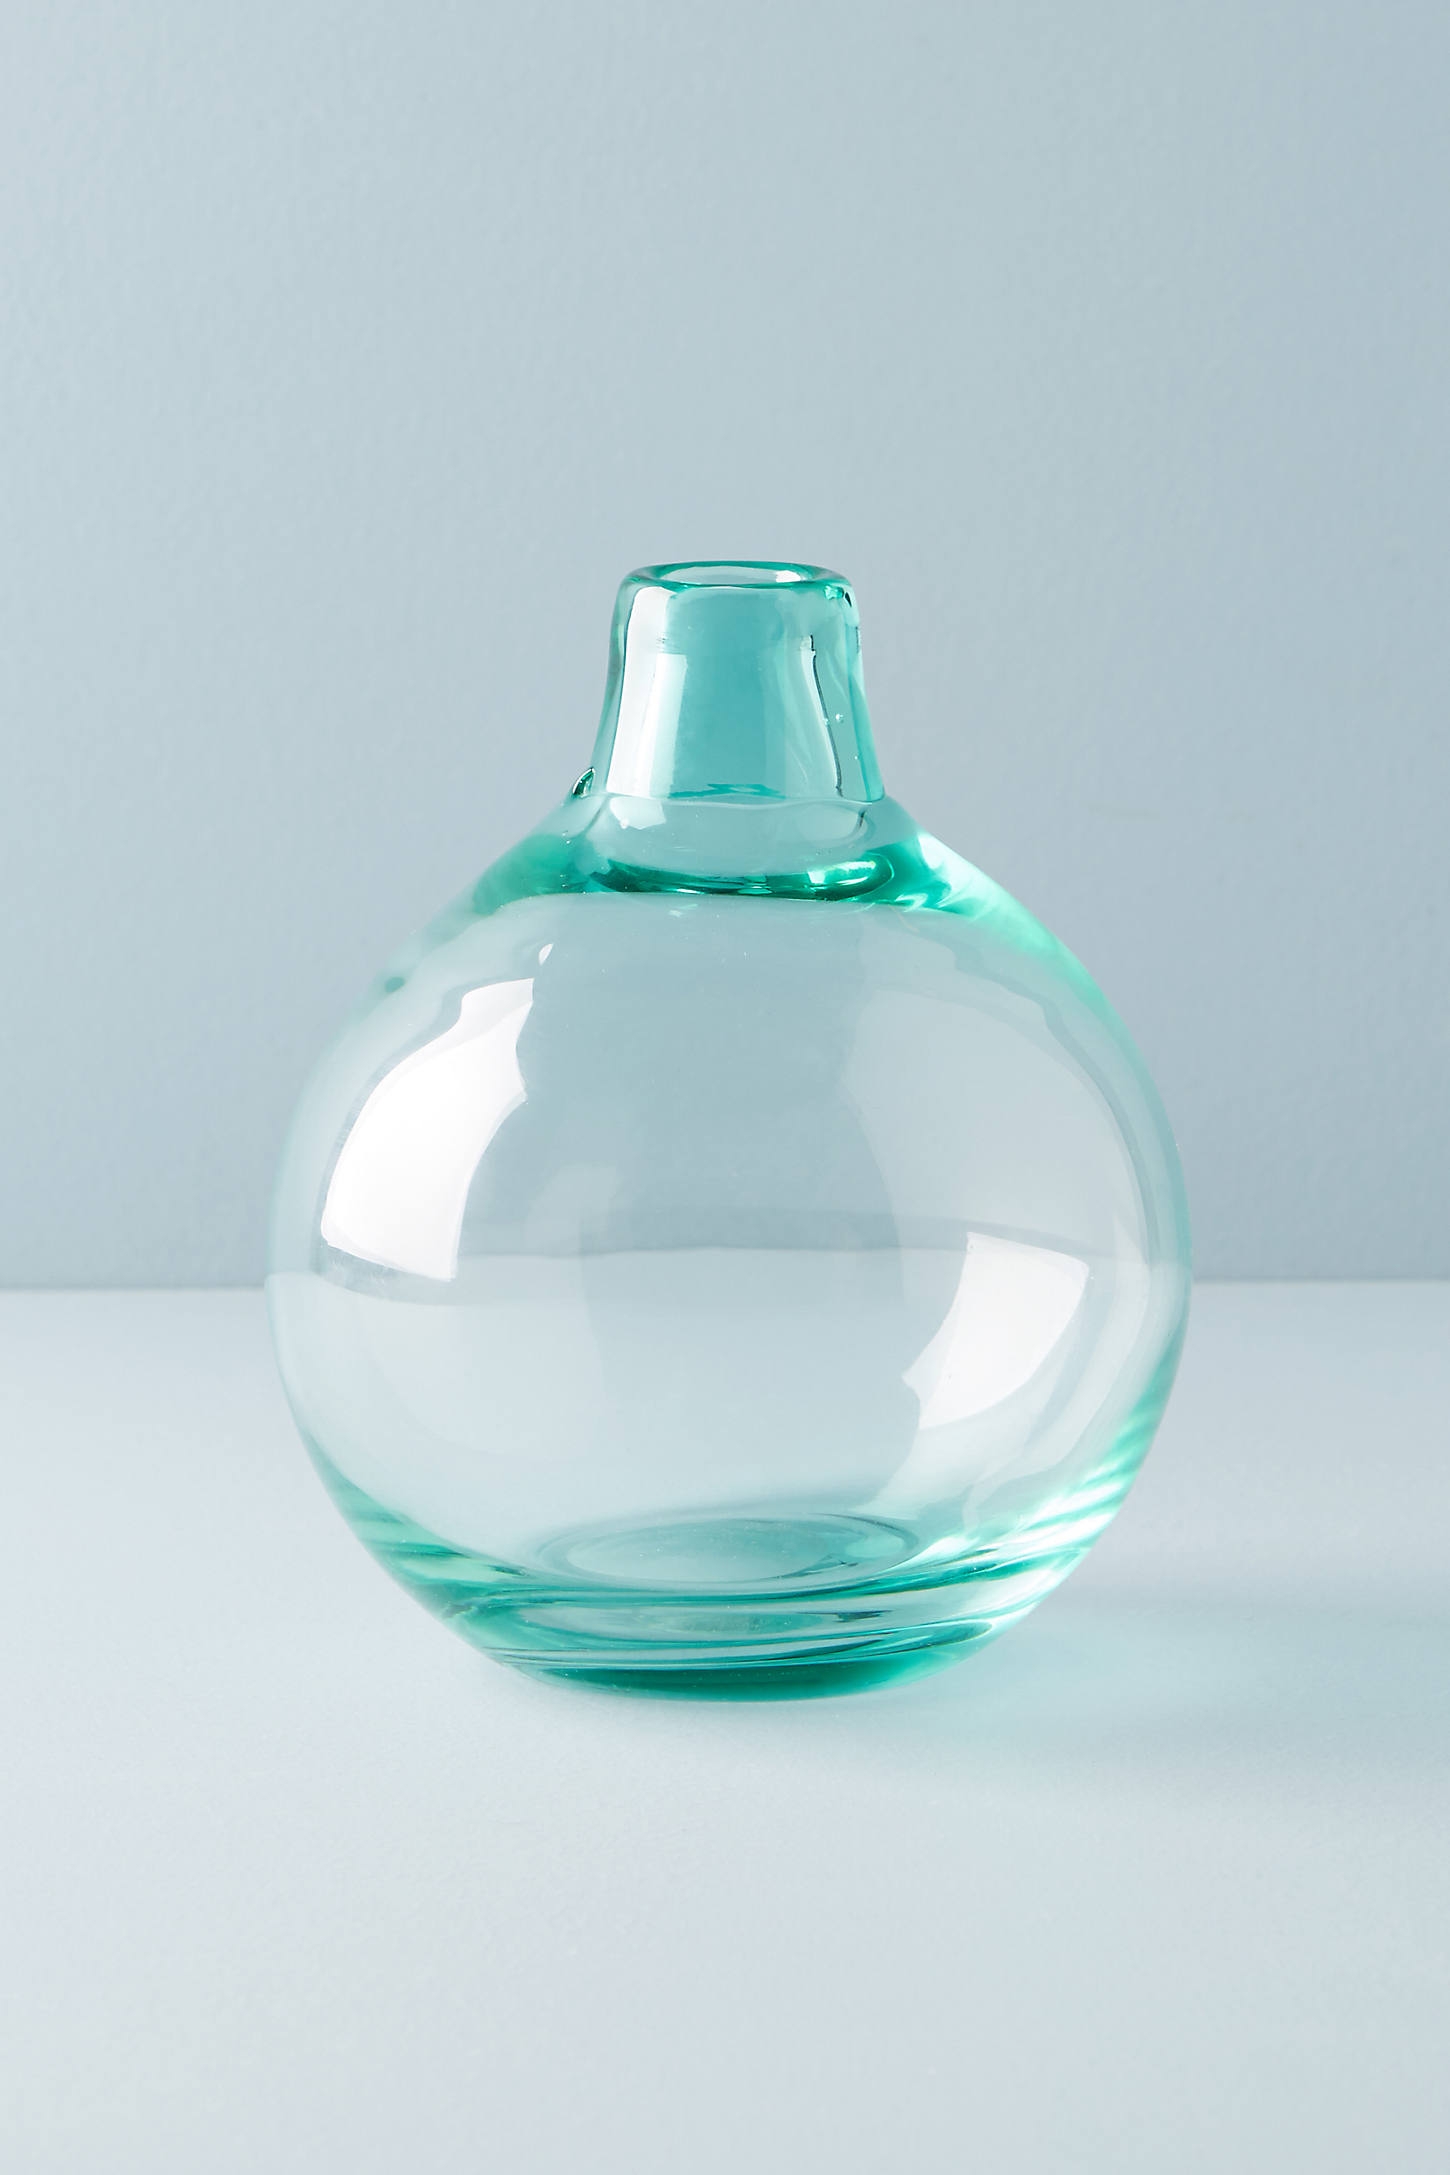 Translucent Bubble Vase - Image 0